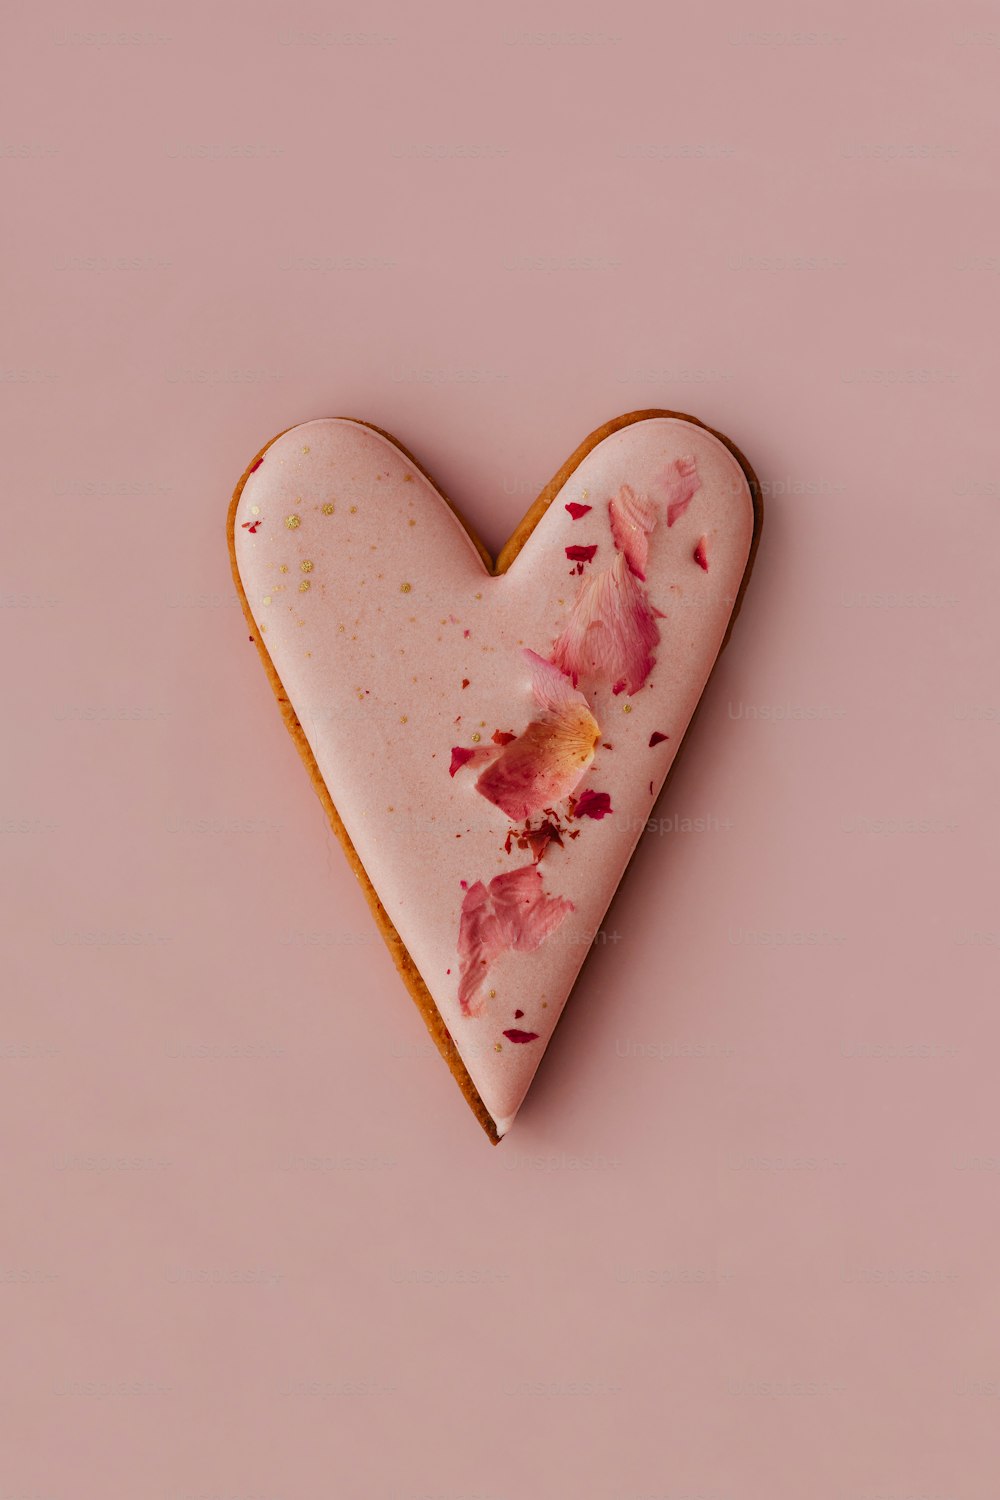 um biscoito em forma de coração com flores cor-de-rosa sobre ele